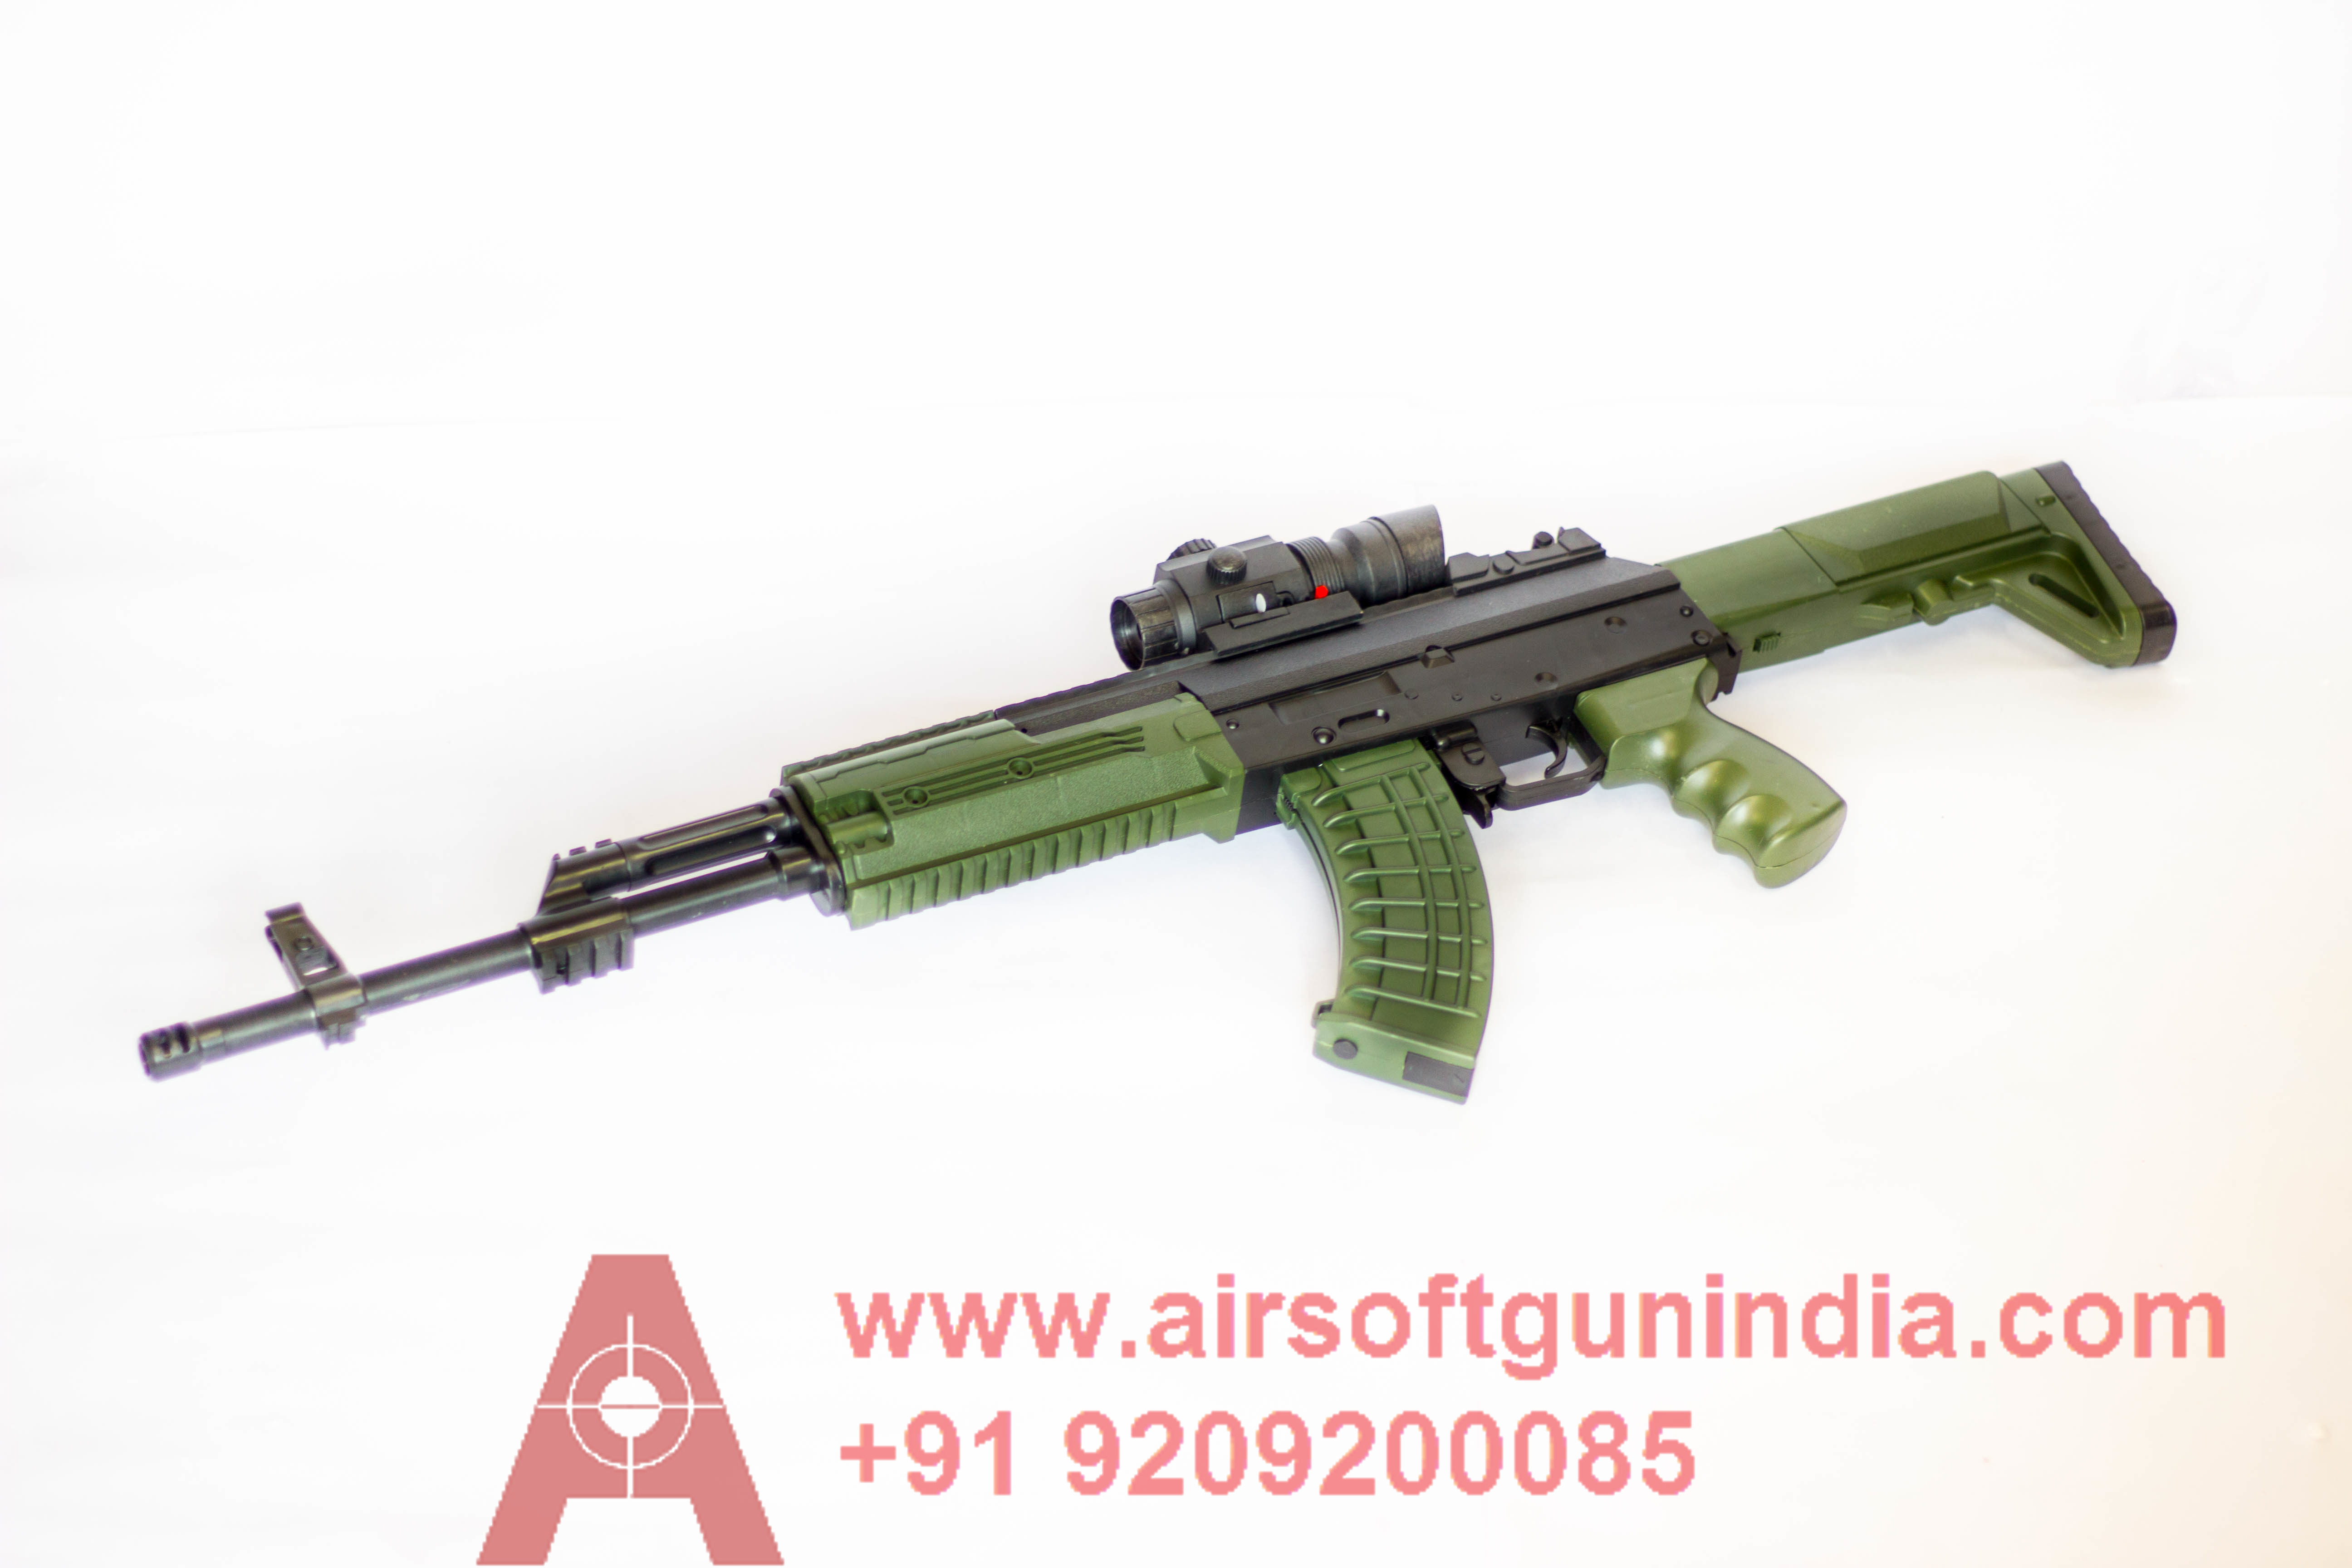 02071 Hybrid Airsoft AK47 By Airsoft Gun India